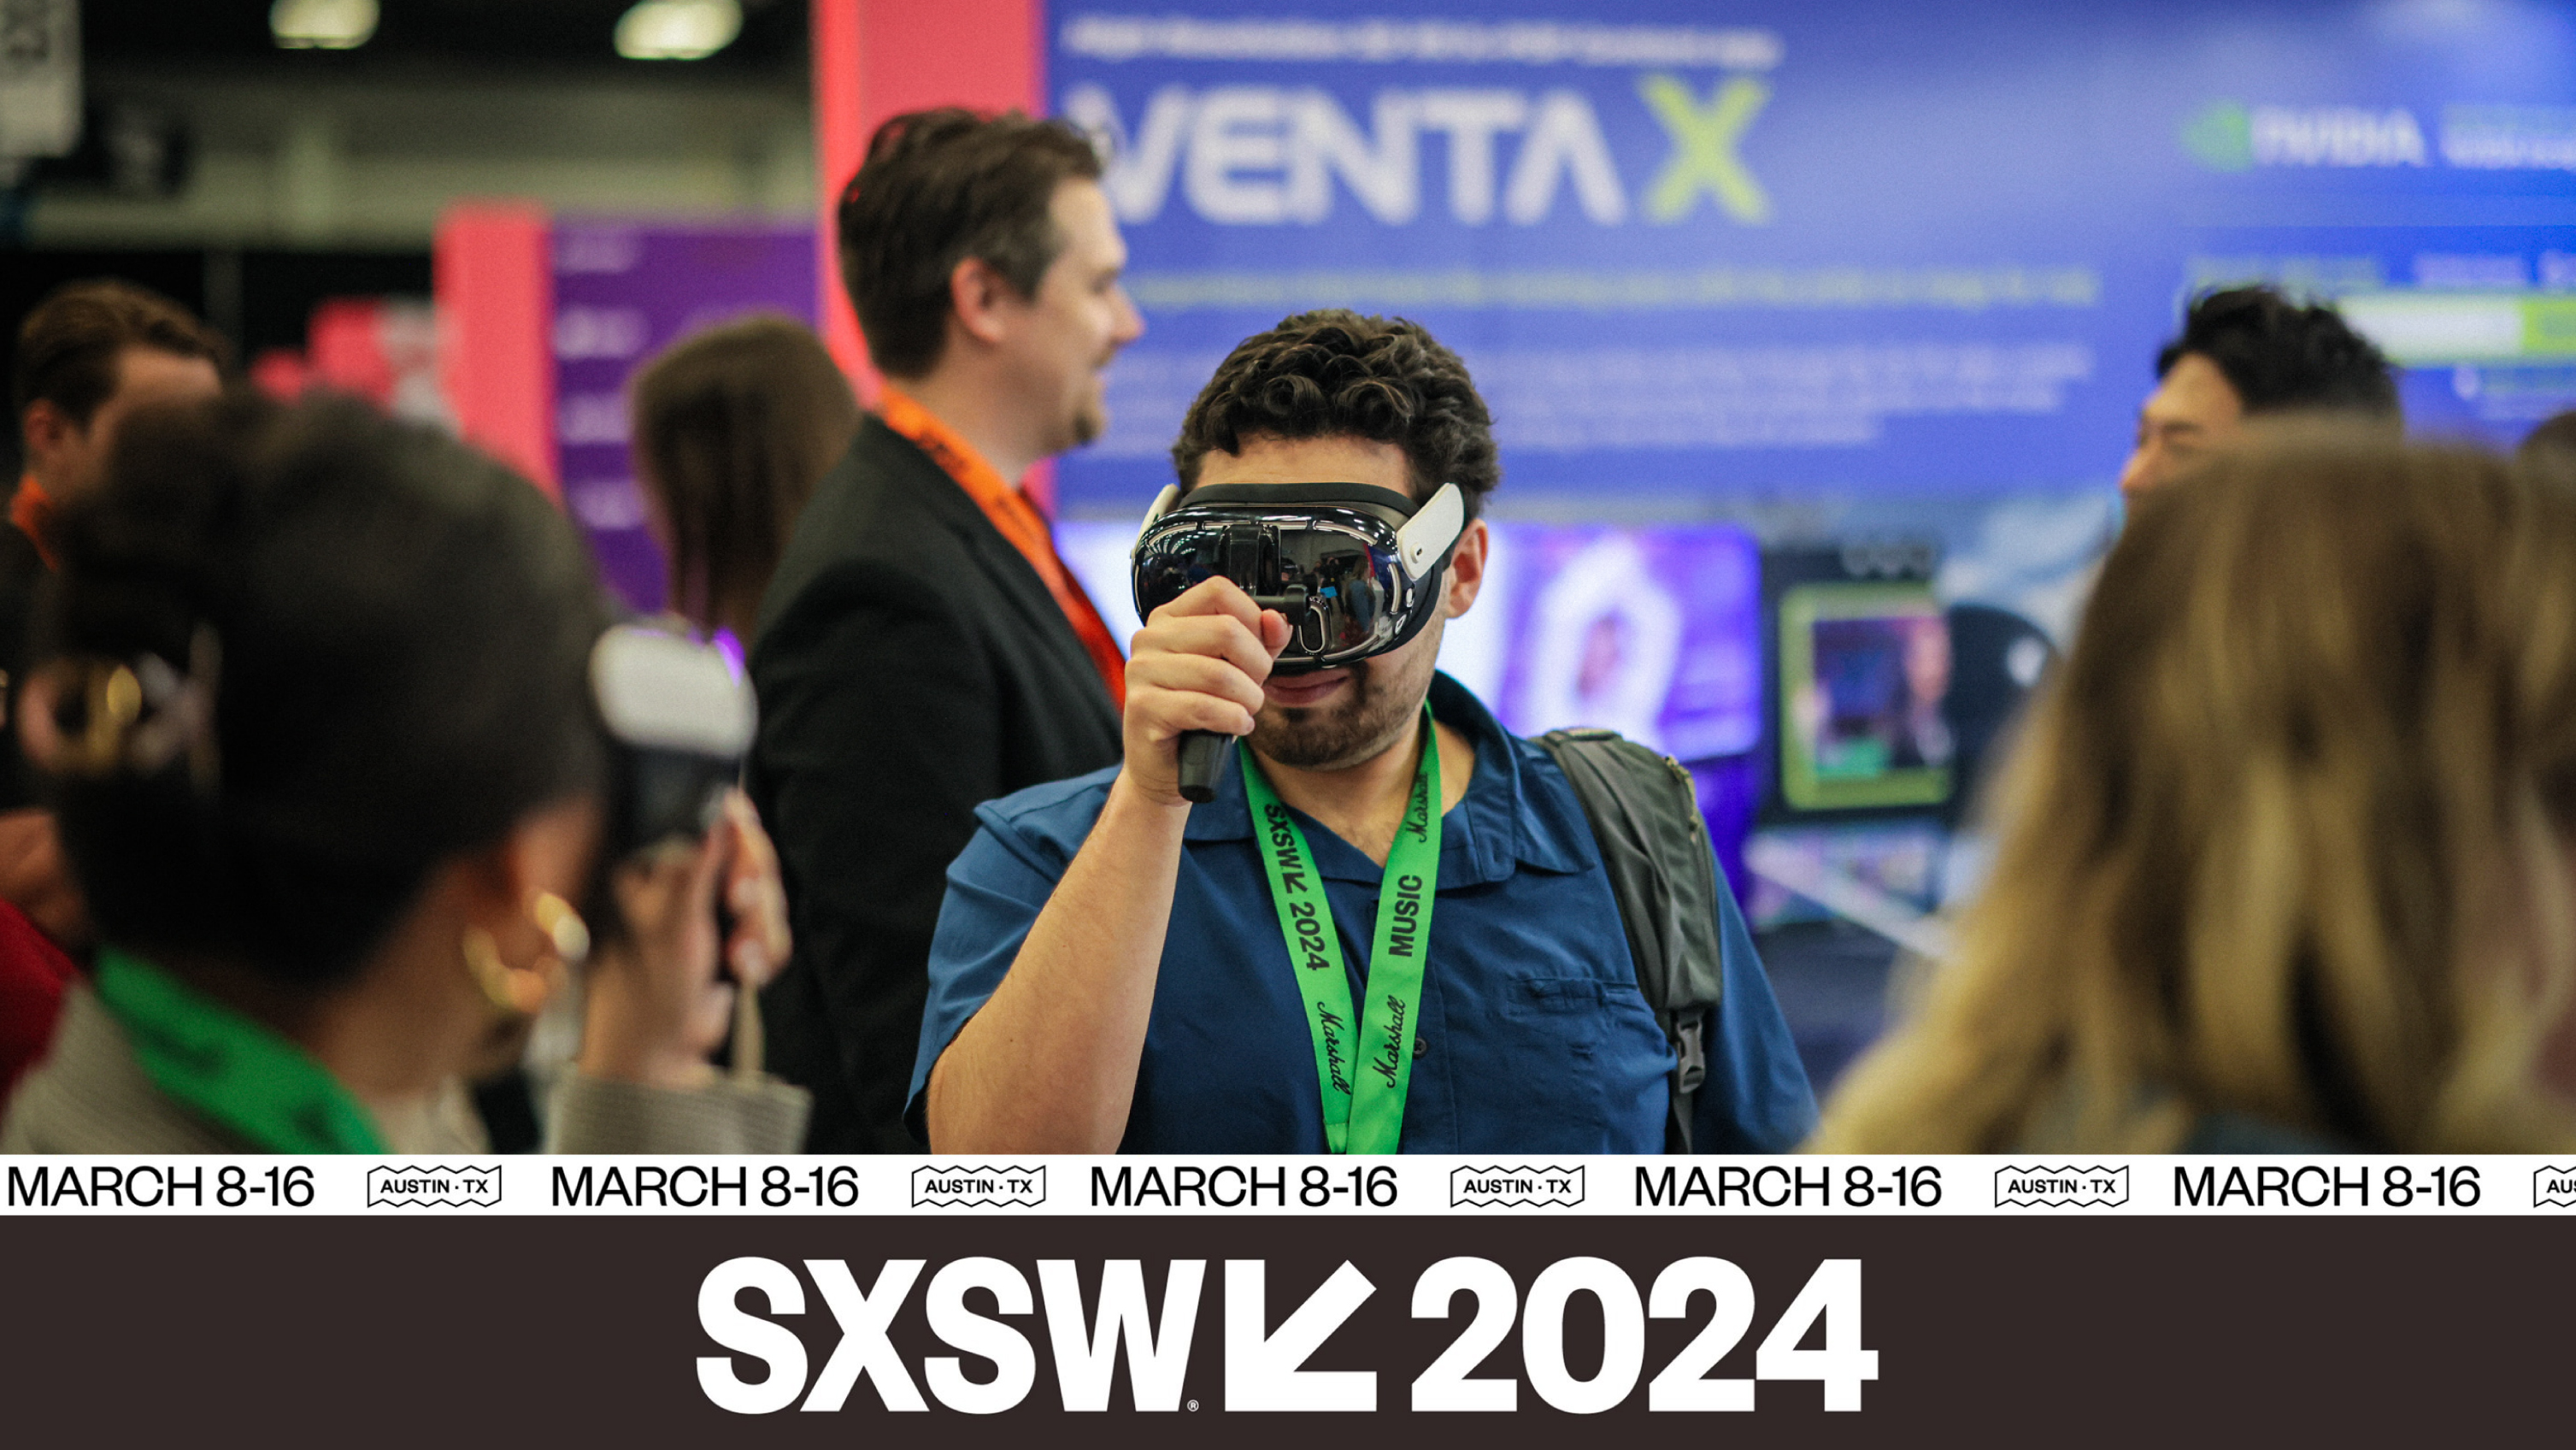 VENTA VR participated in SXSW 2024!